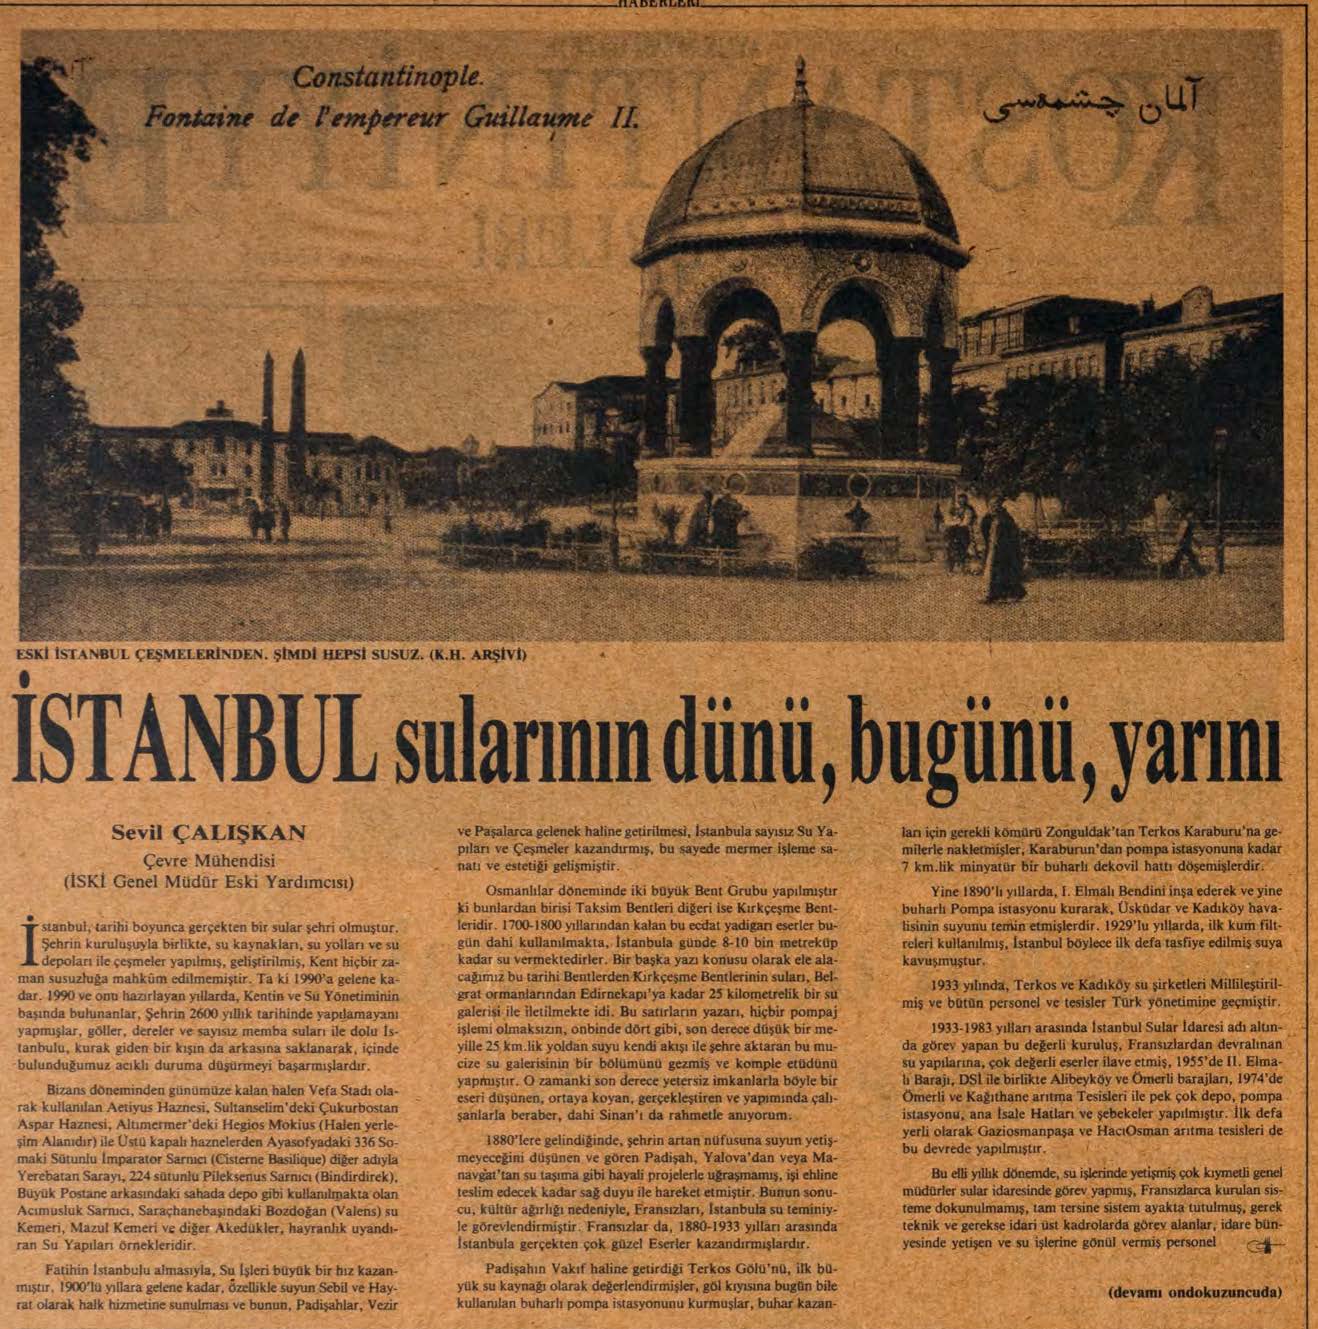 Kostantıniyye Haberleri Gazetesi: İstanbul sular ının dünü, bugünü, yarını